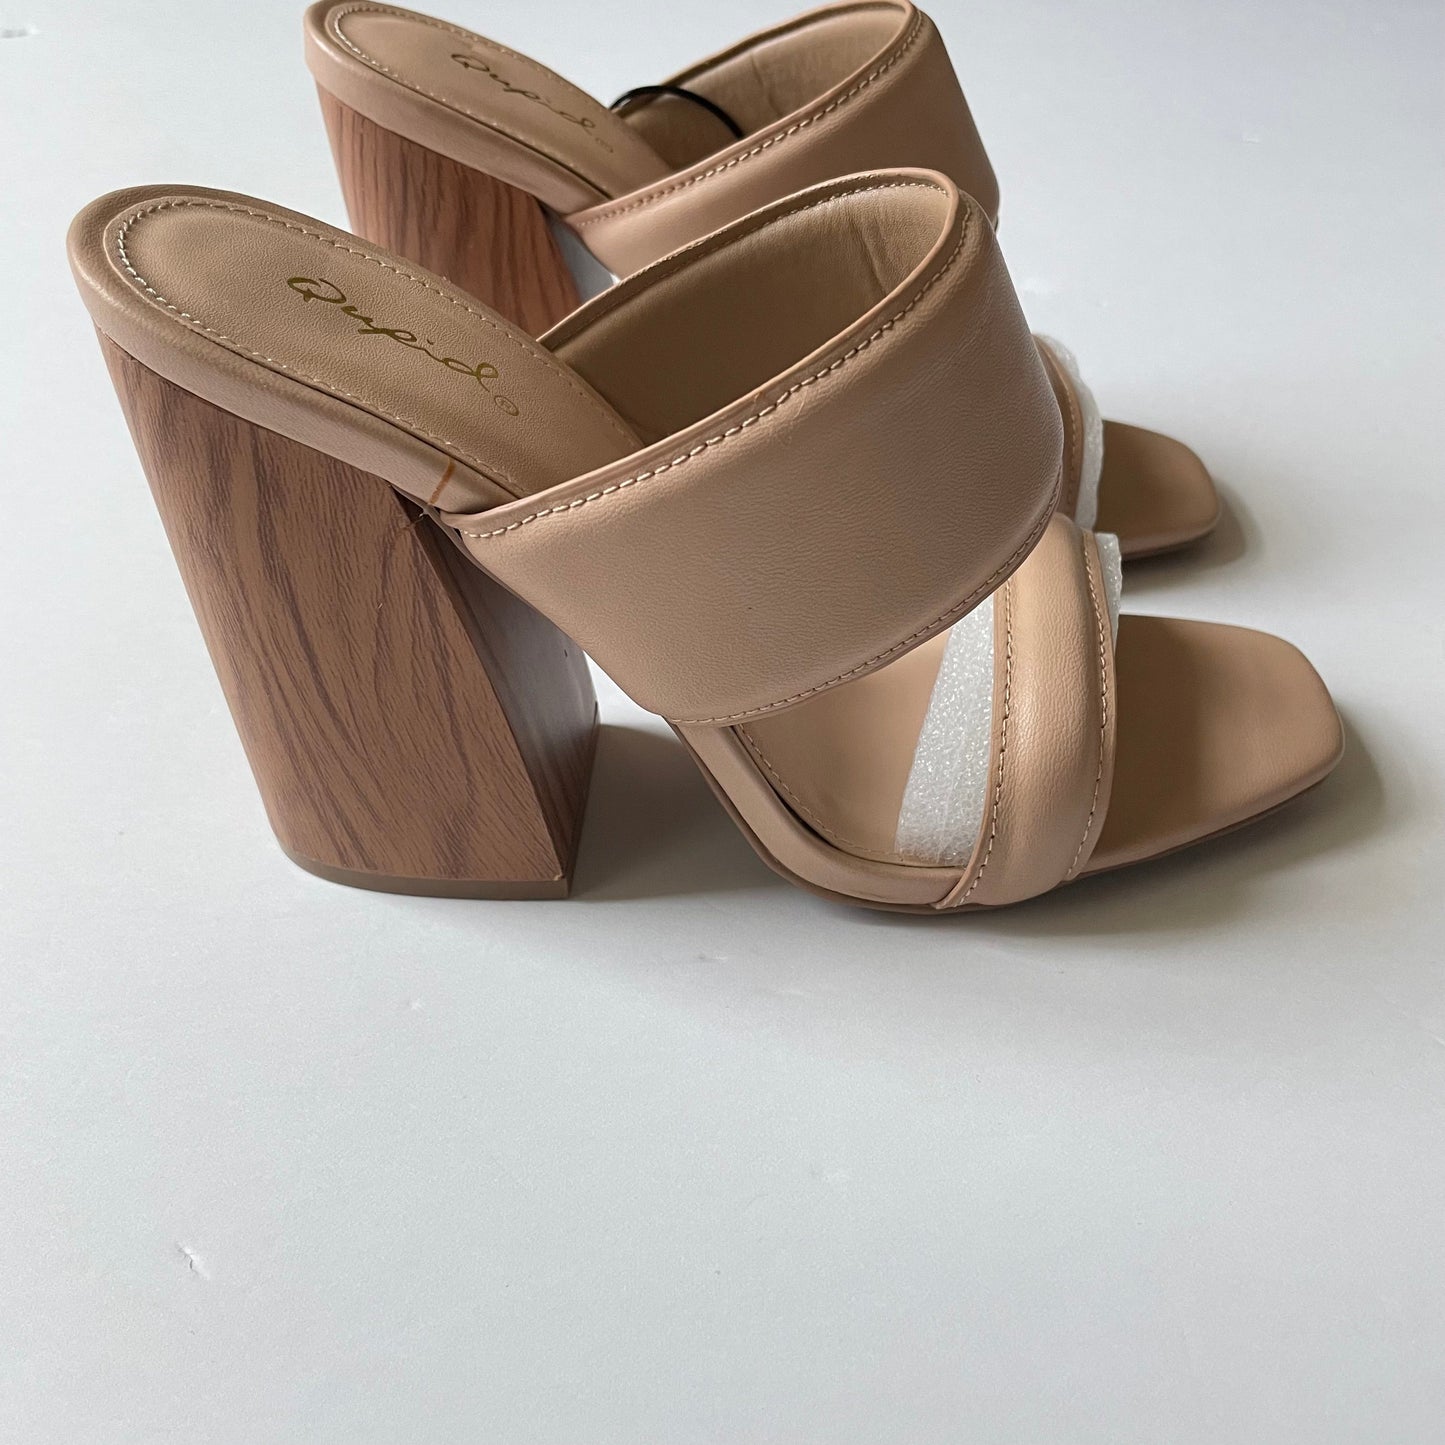 Tan Shoes Heels Block Qupid, Size 7.5